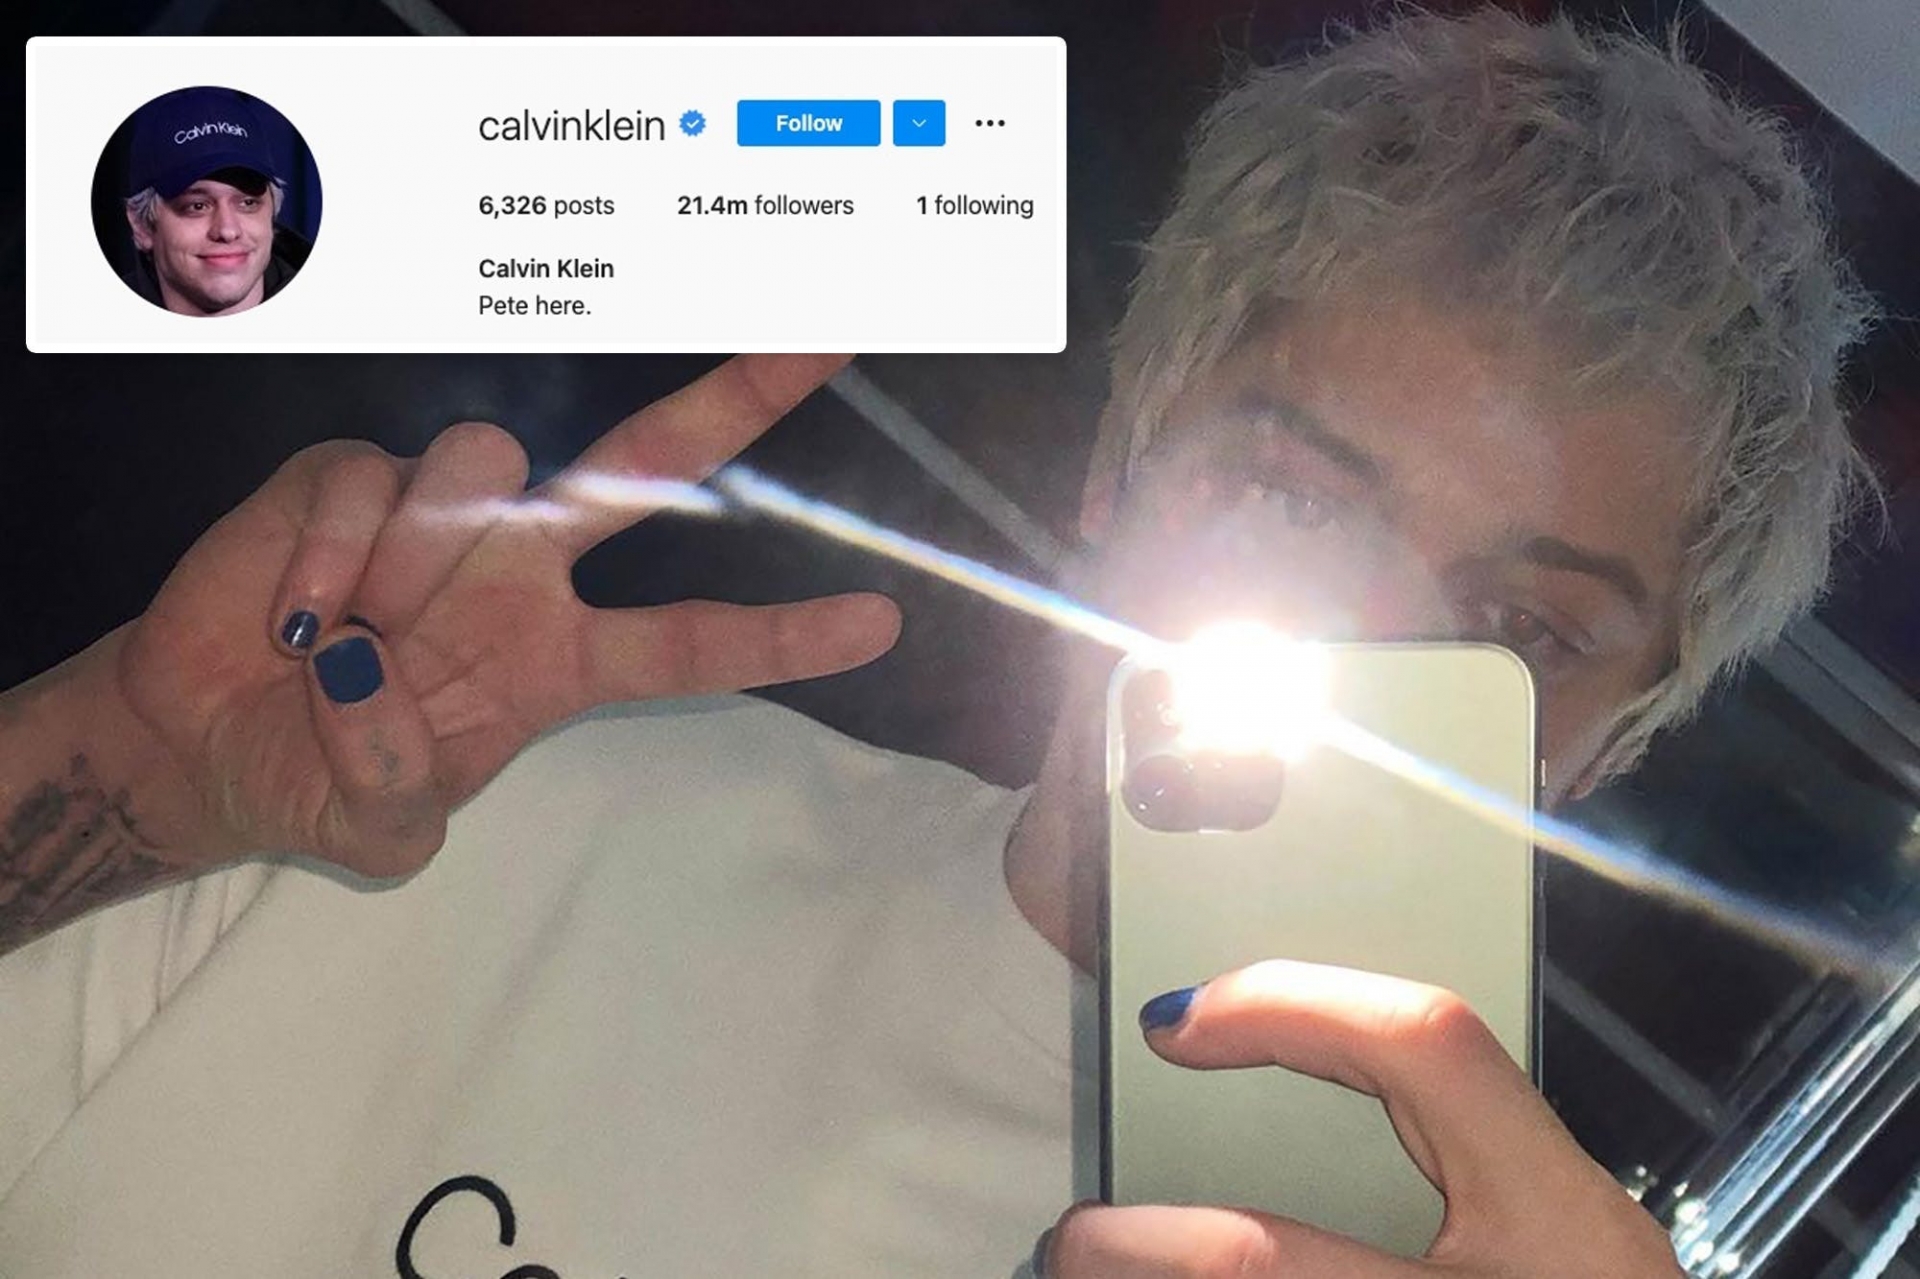 Nam diễn viên hài Pete Davidson là người đầu tiên 'sở hữu' tài khoản Instagram của thương hiệu Calvin Klein. Điều này làm khán giả vô cùng bất ngờ bởi vi Pete không hề hoạt động trên Instagram.